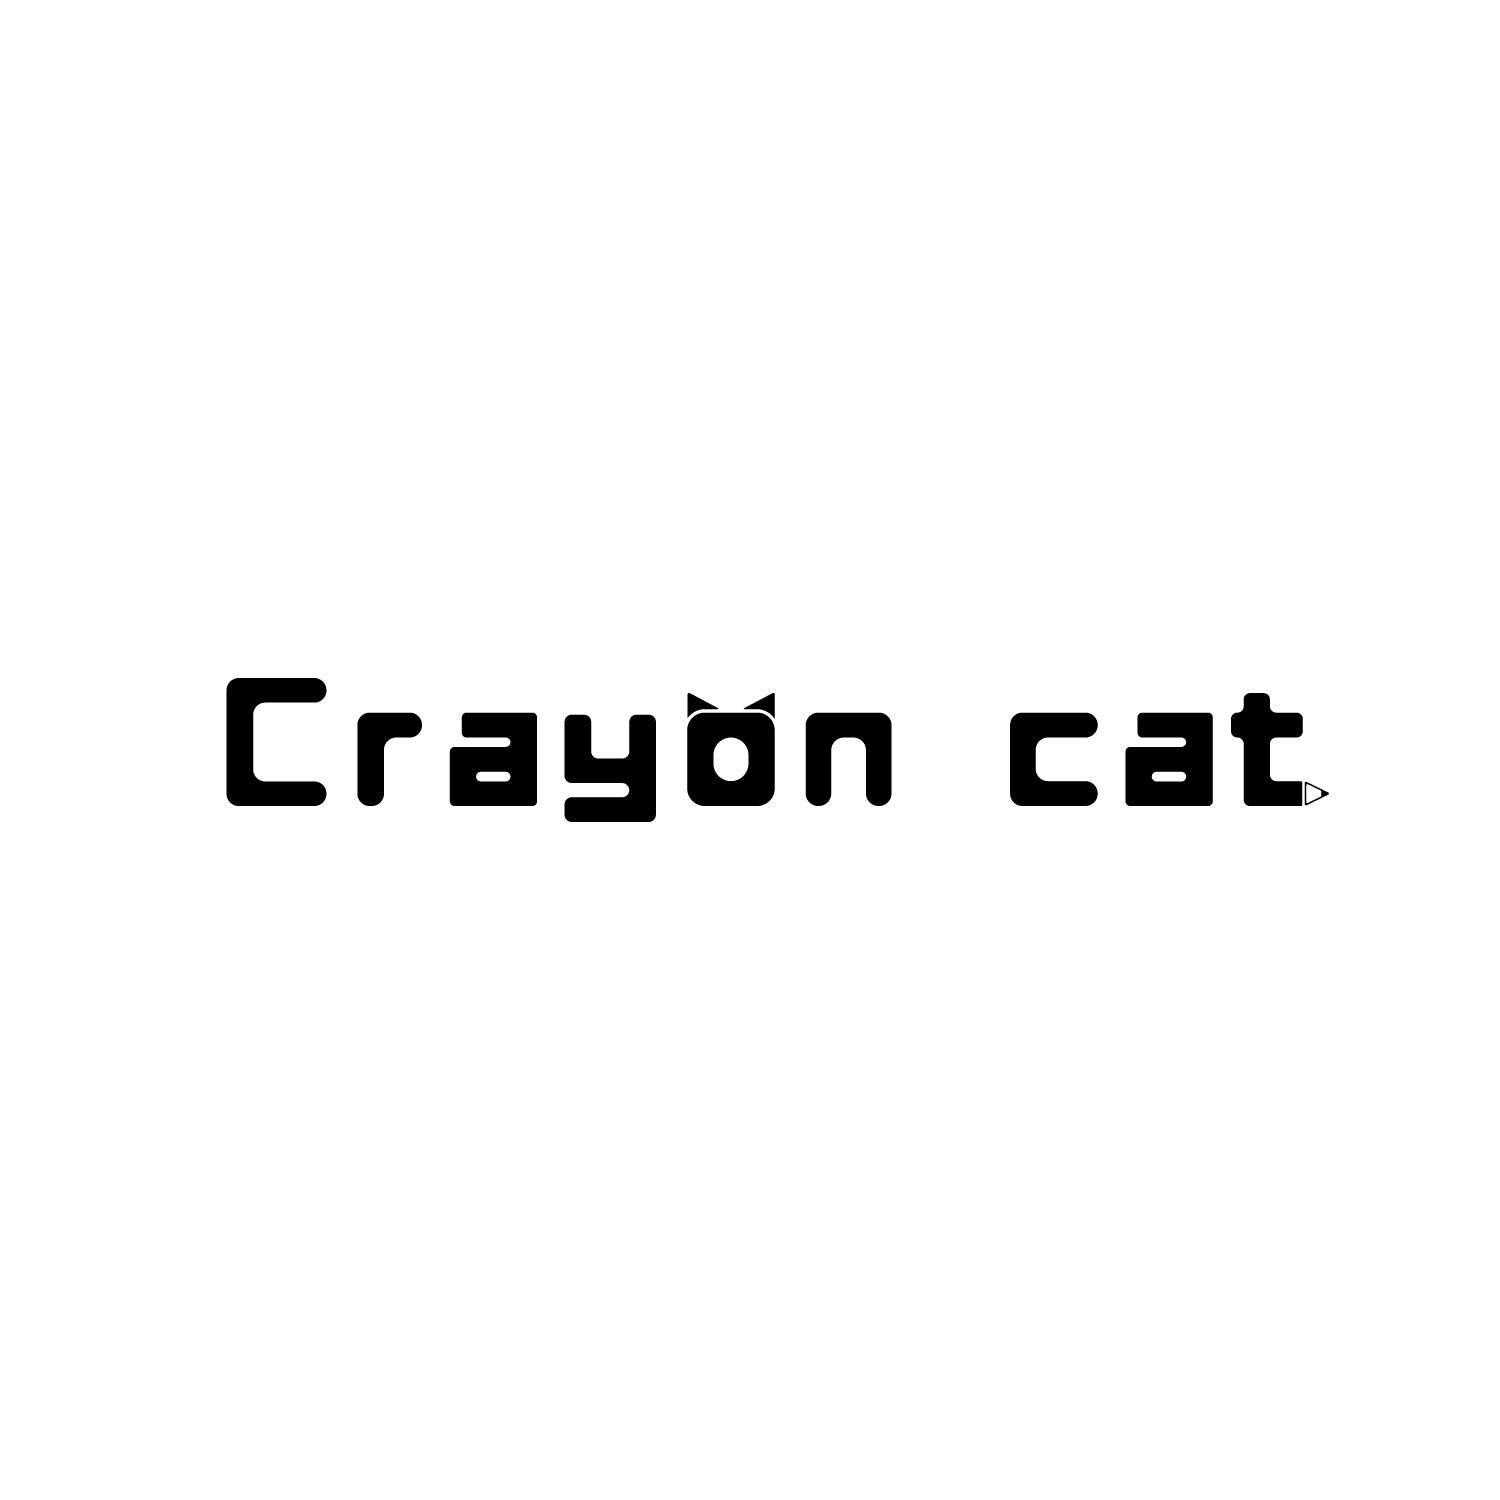 CRAYON CAT